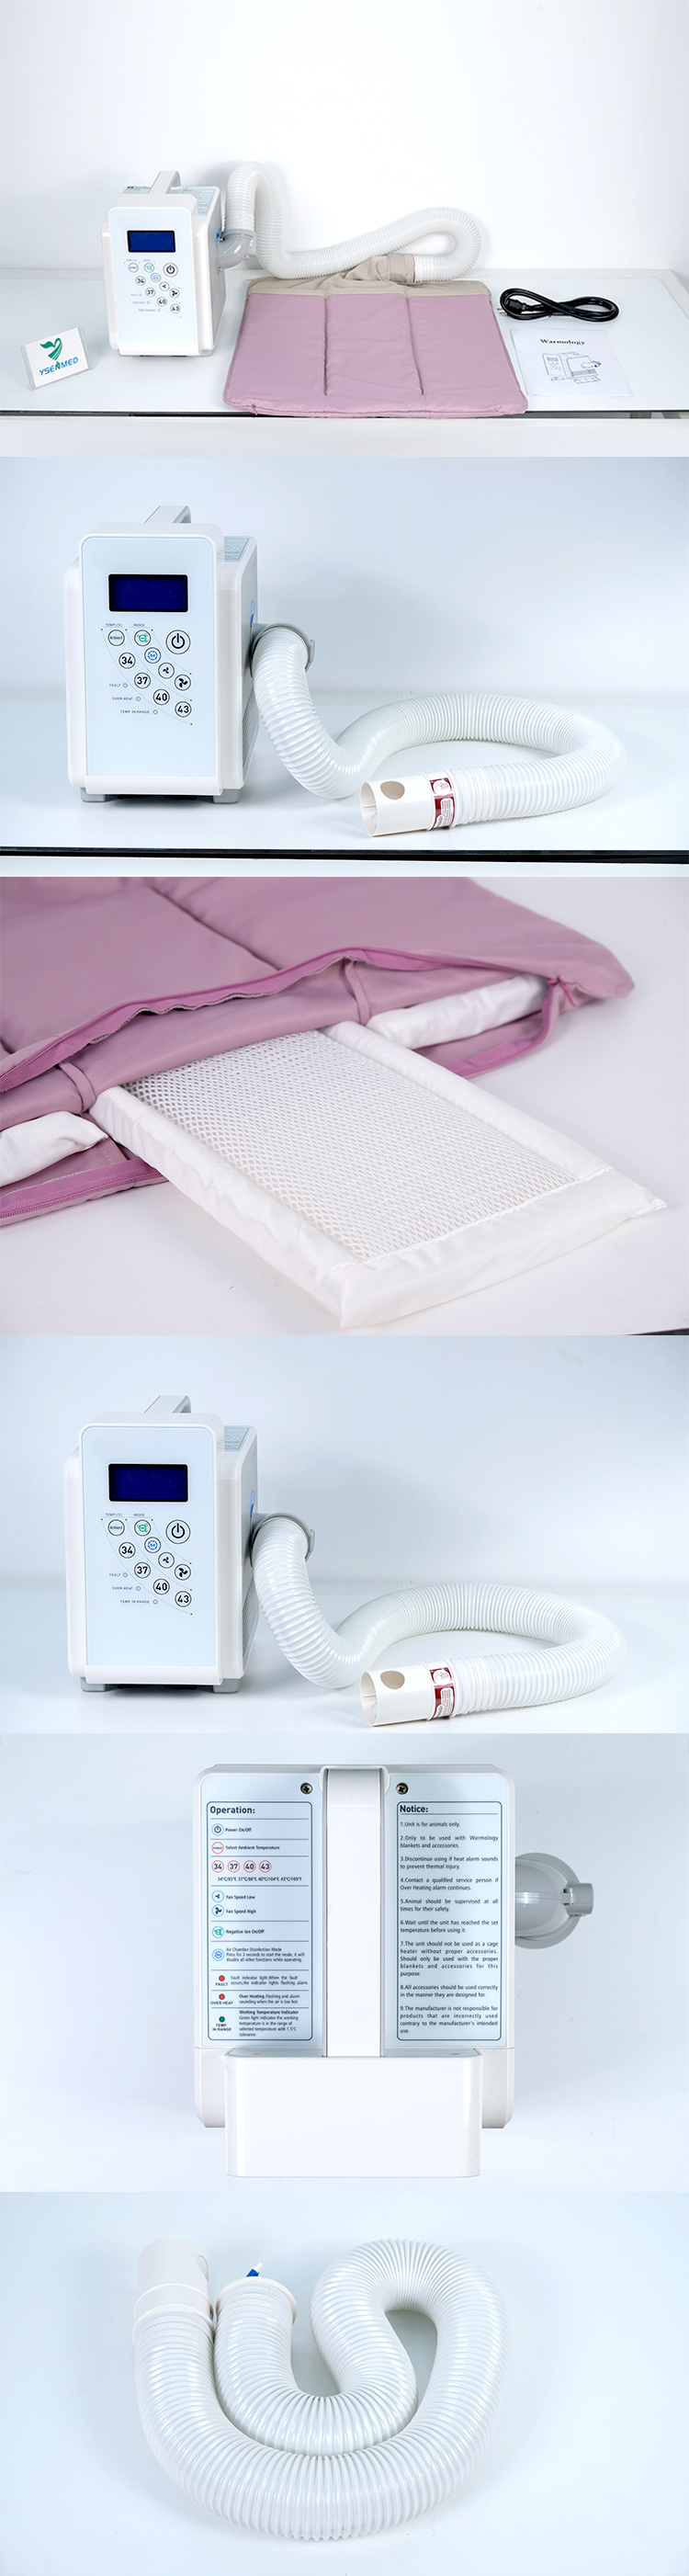 Dispositivos de aquecimento veterinários YSWMS-1501